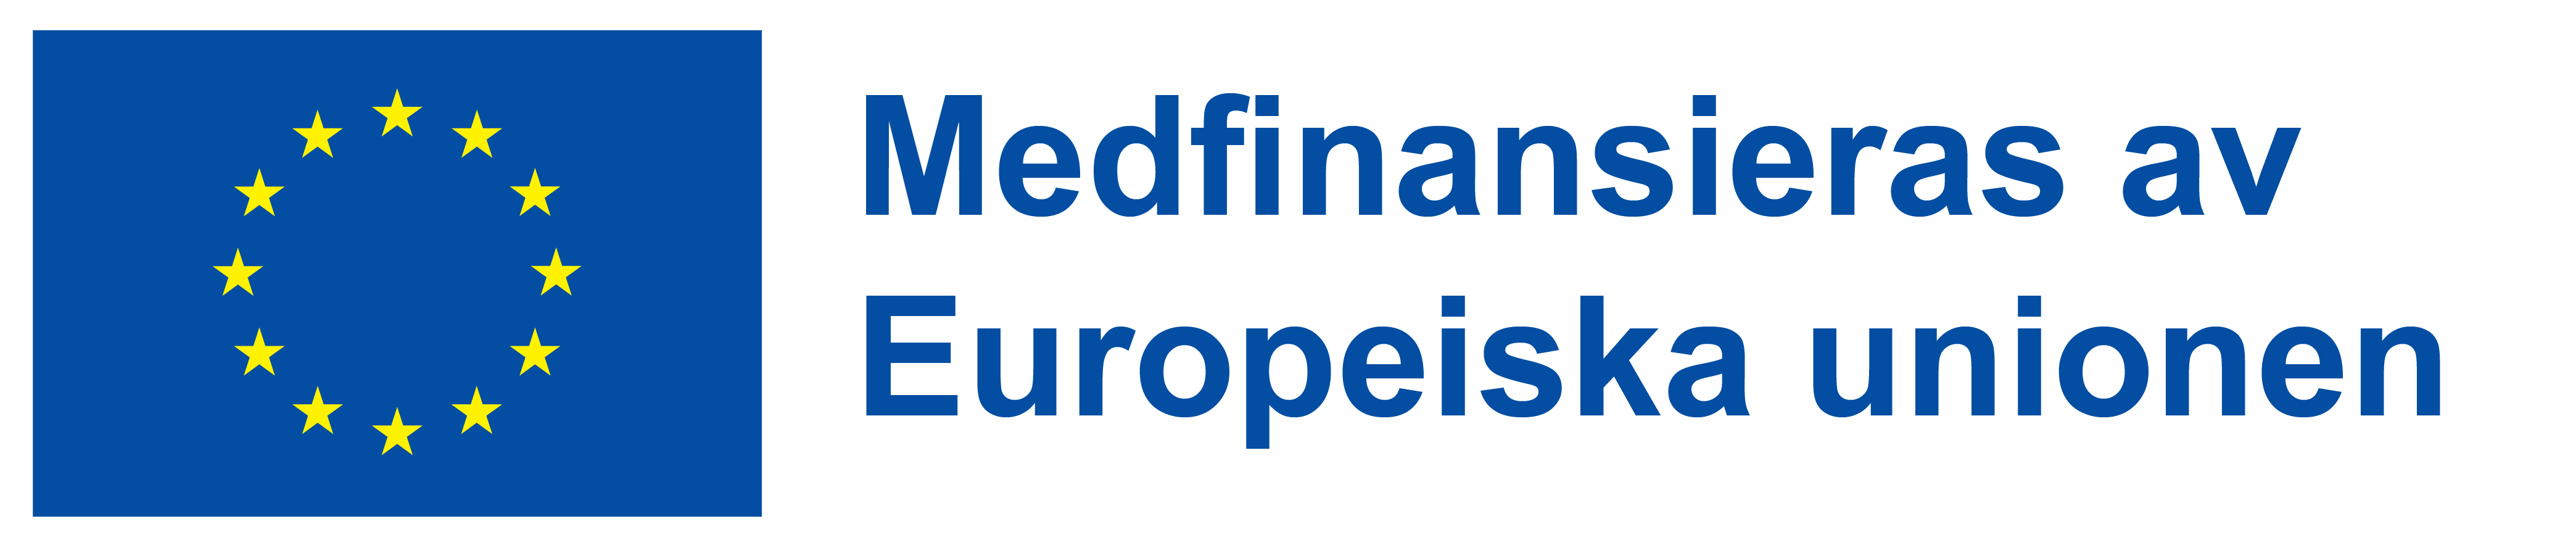 Logotyp EU - medfinansieras av EU